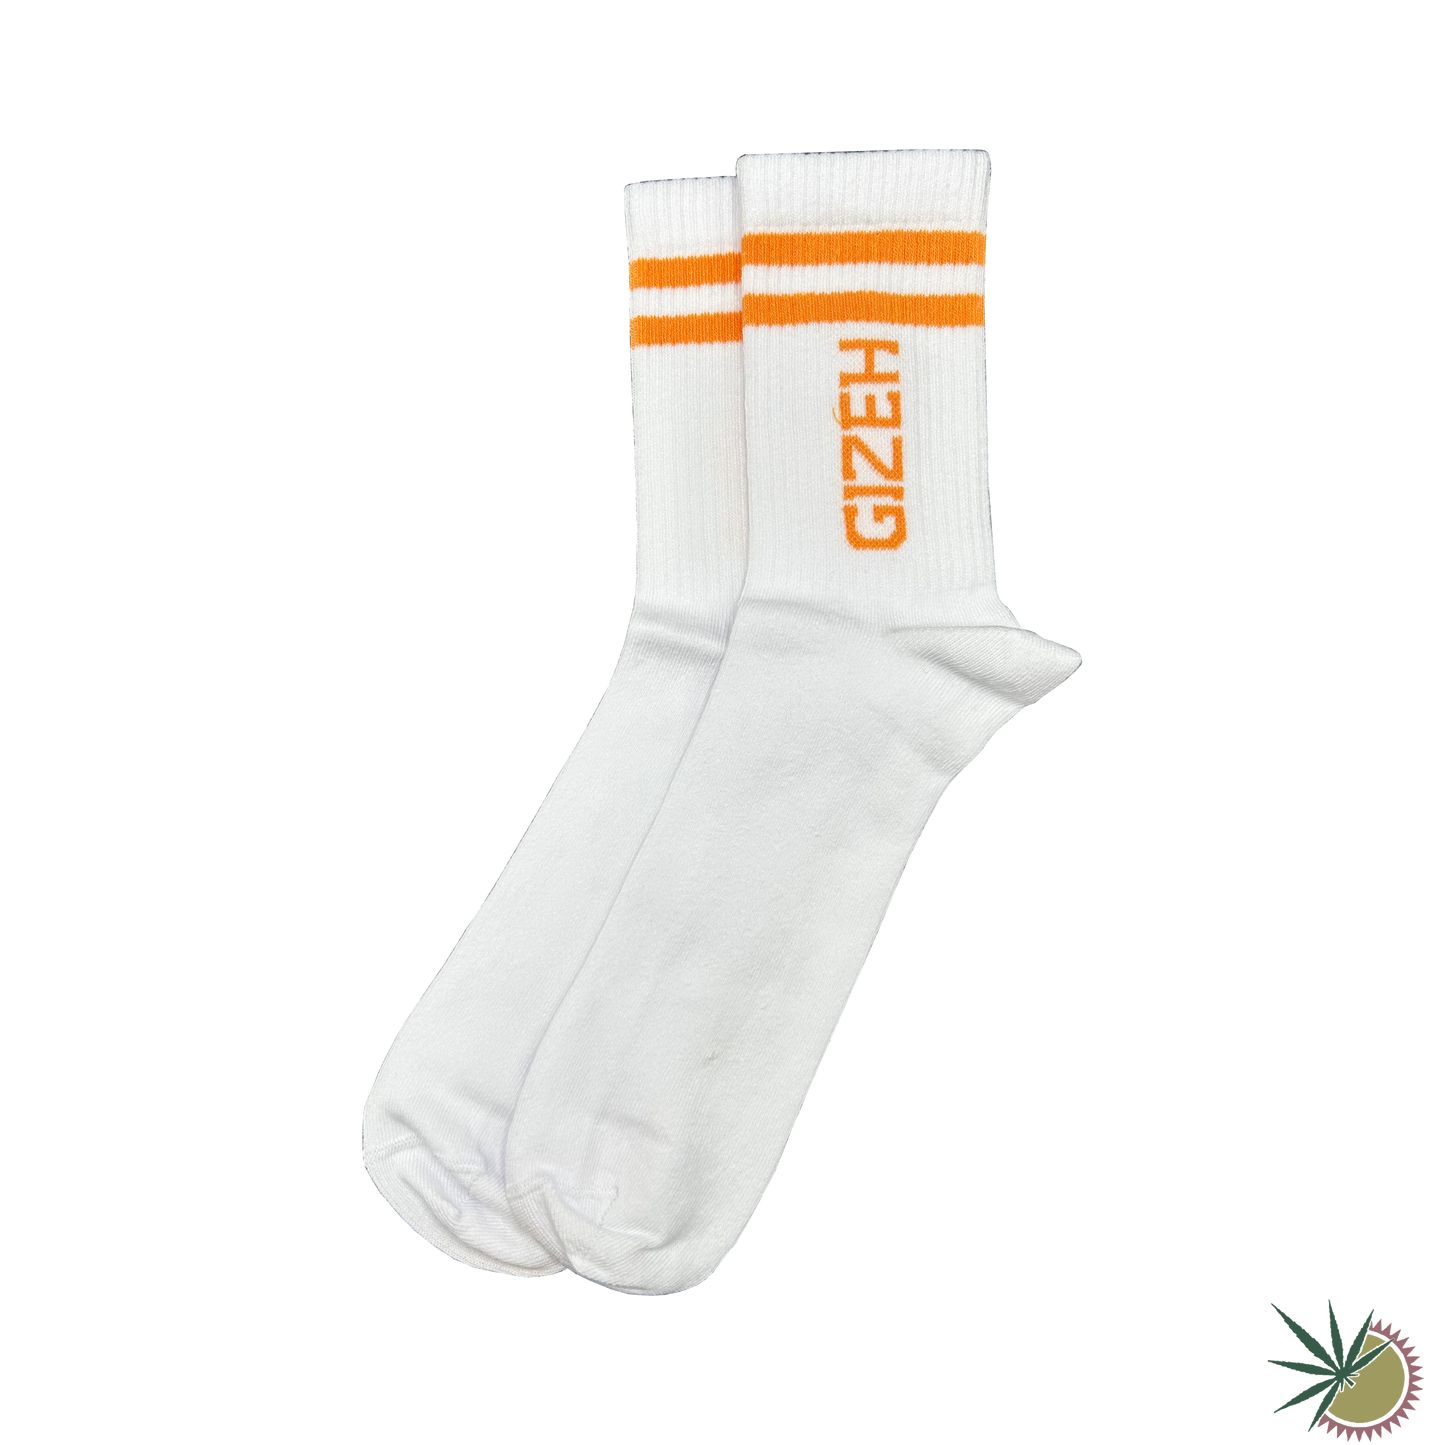 Socken Gizeh weiß mit orangenem Gizeh-Logo verschiedene Größen